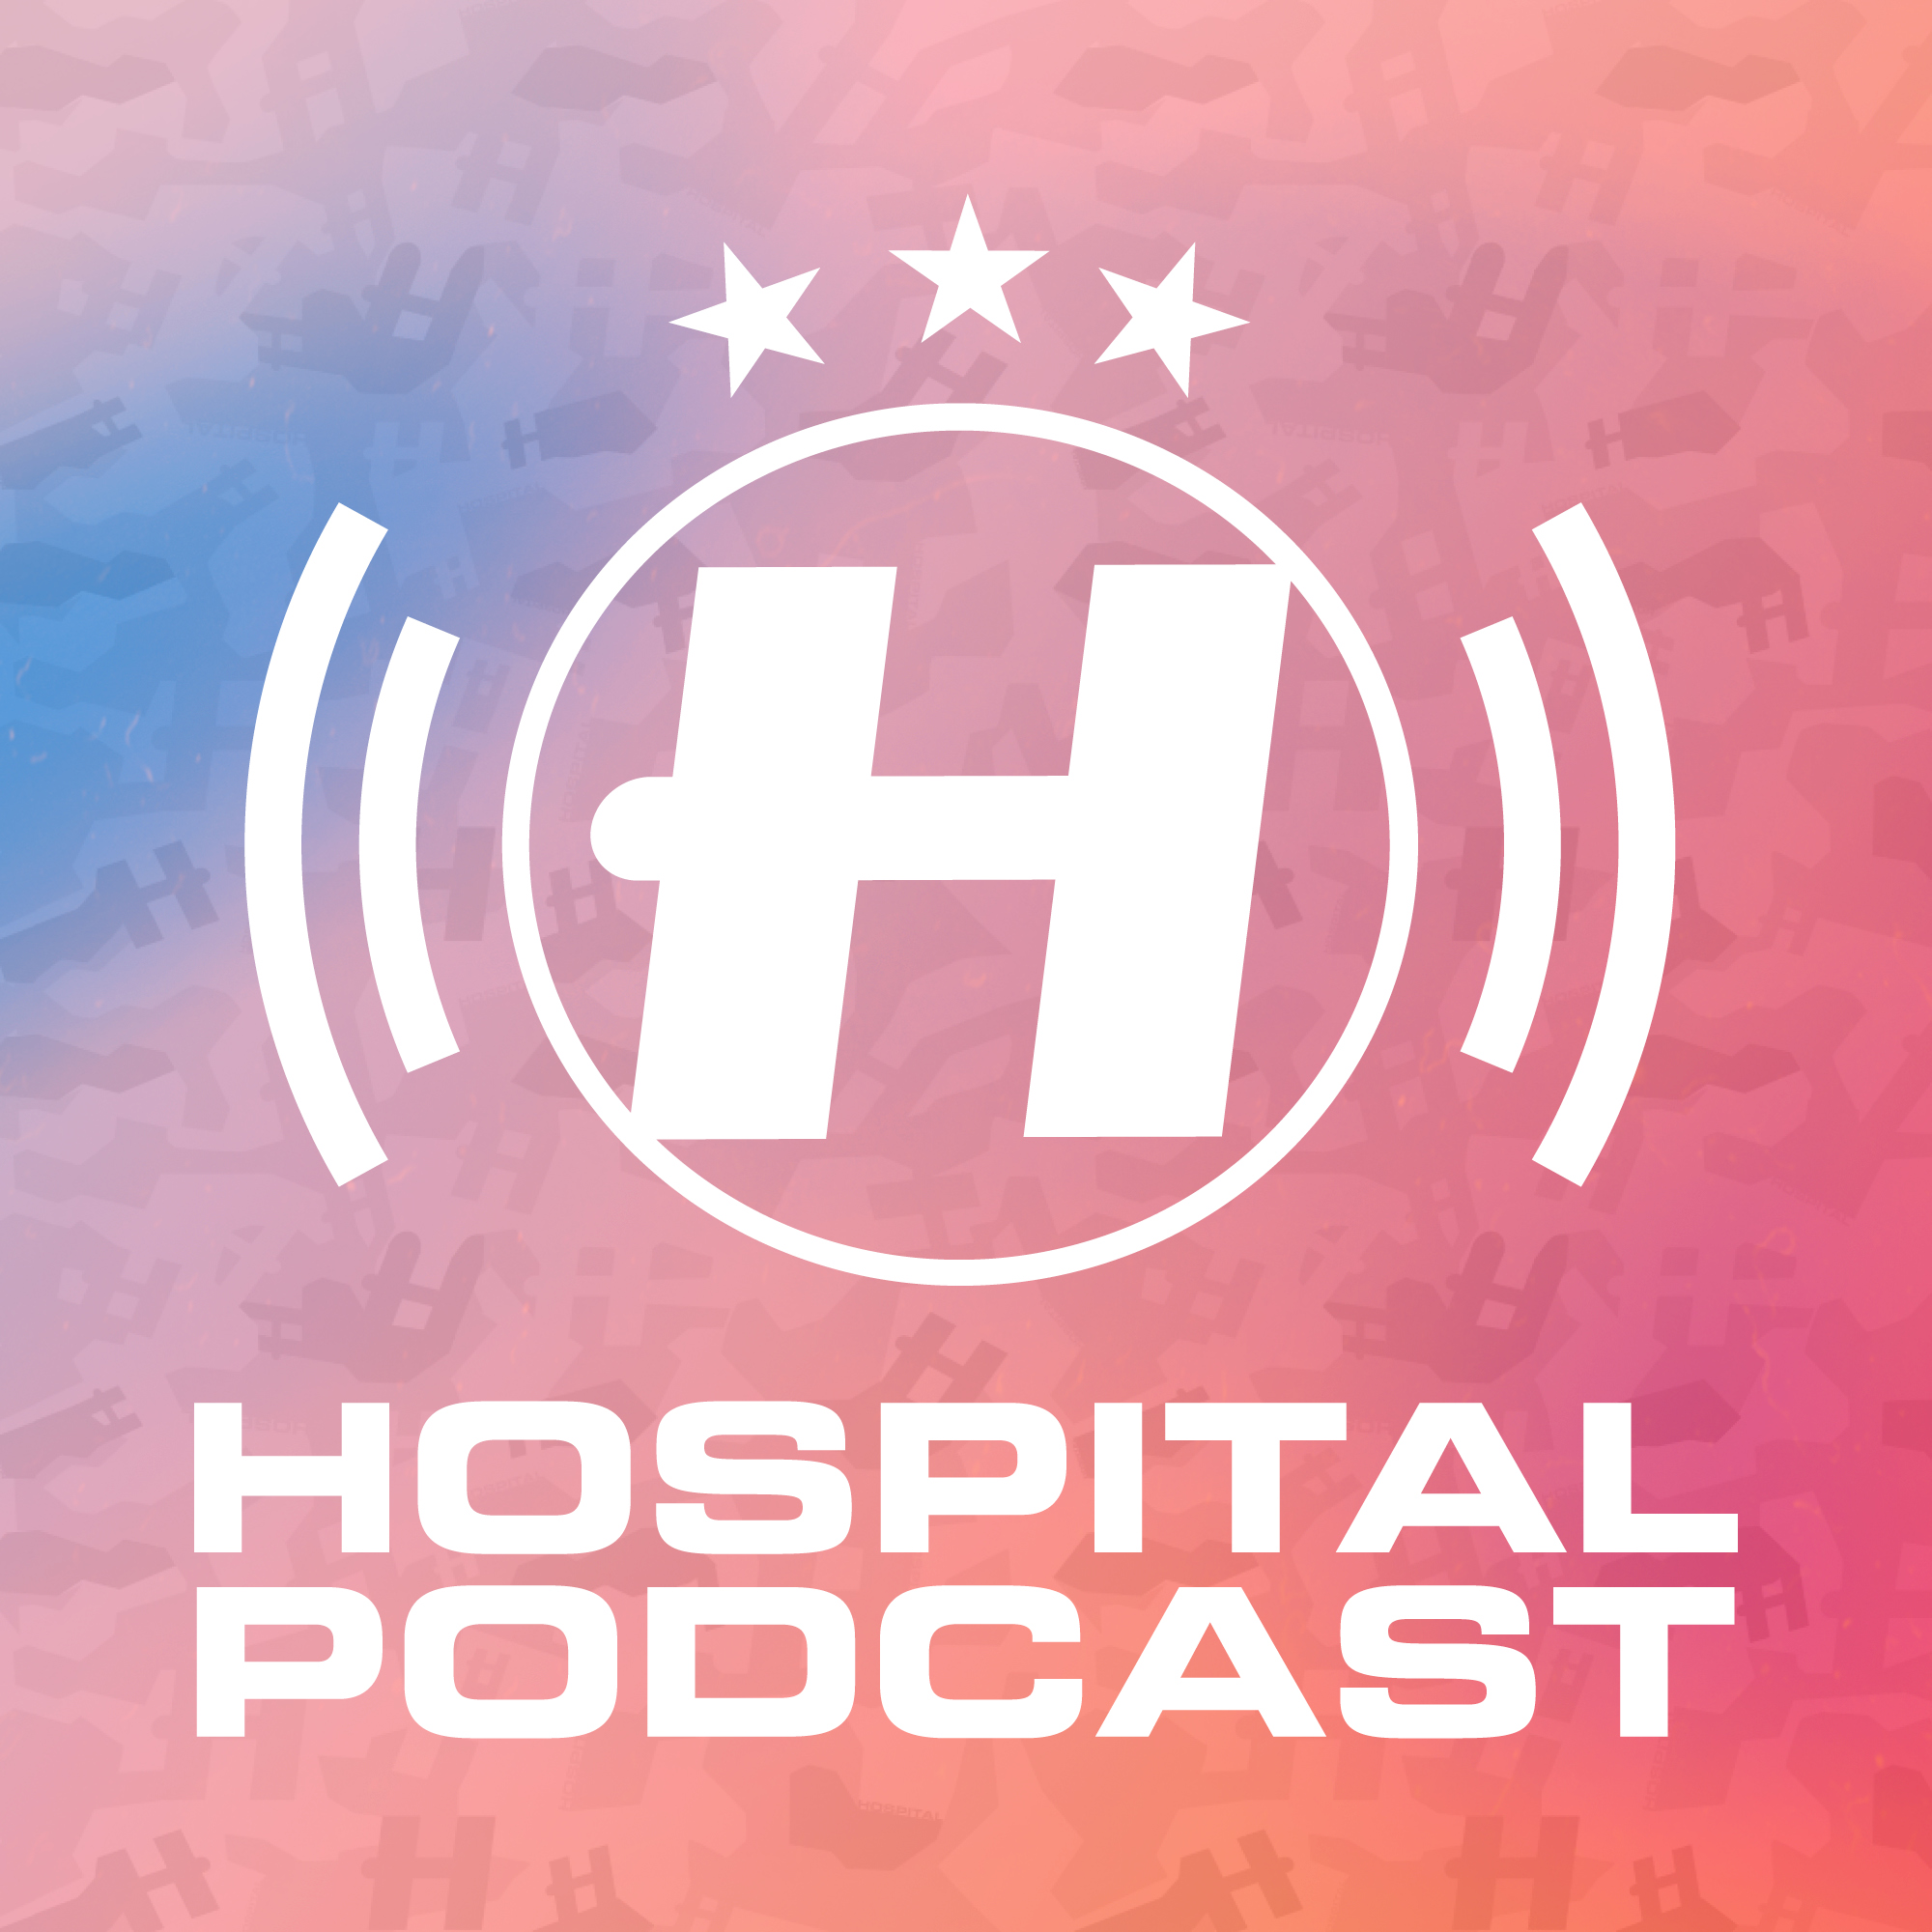 Hospital Podcast 397 with Grafix Artwork